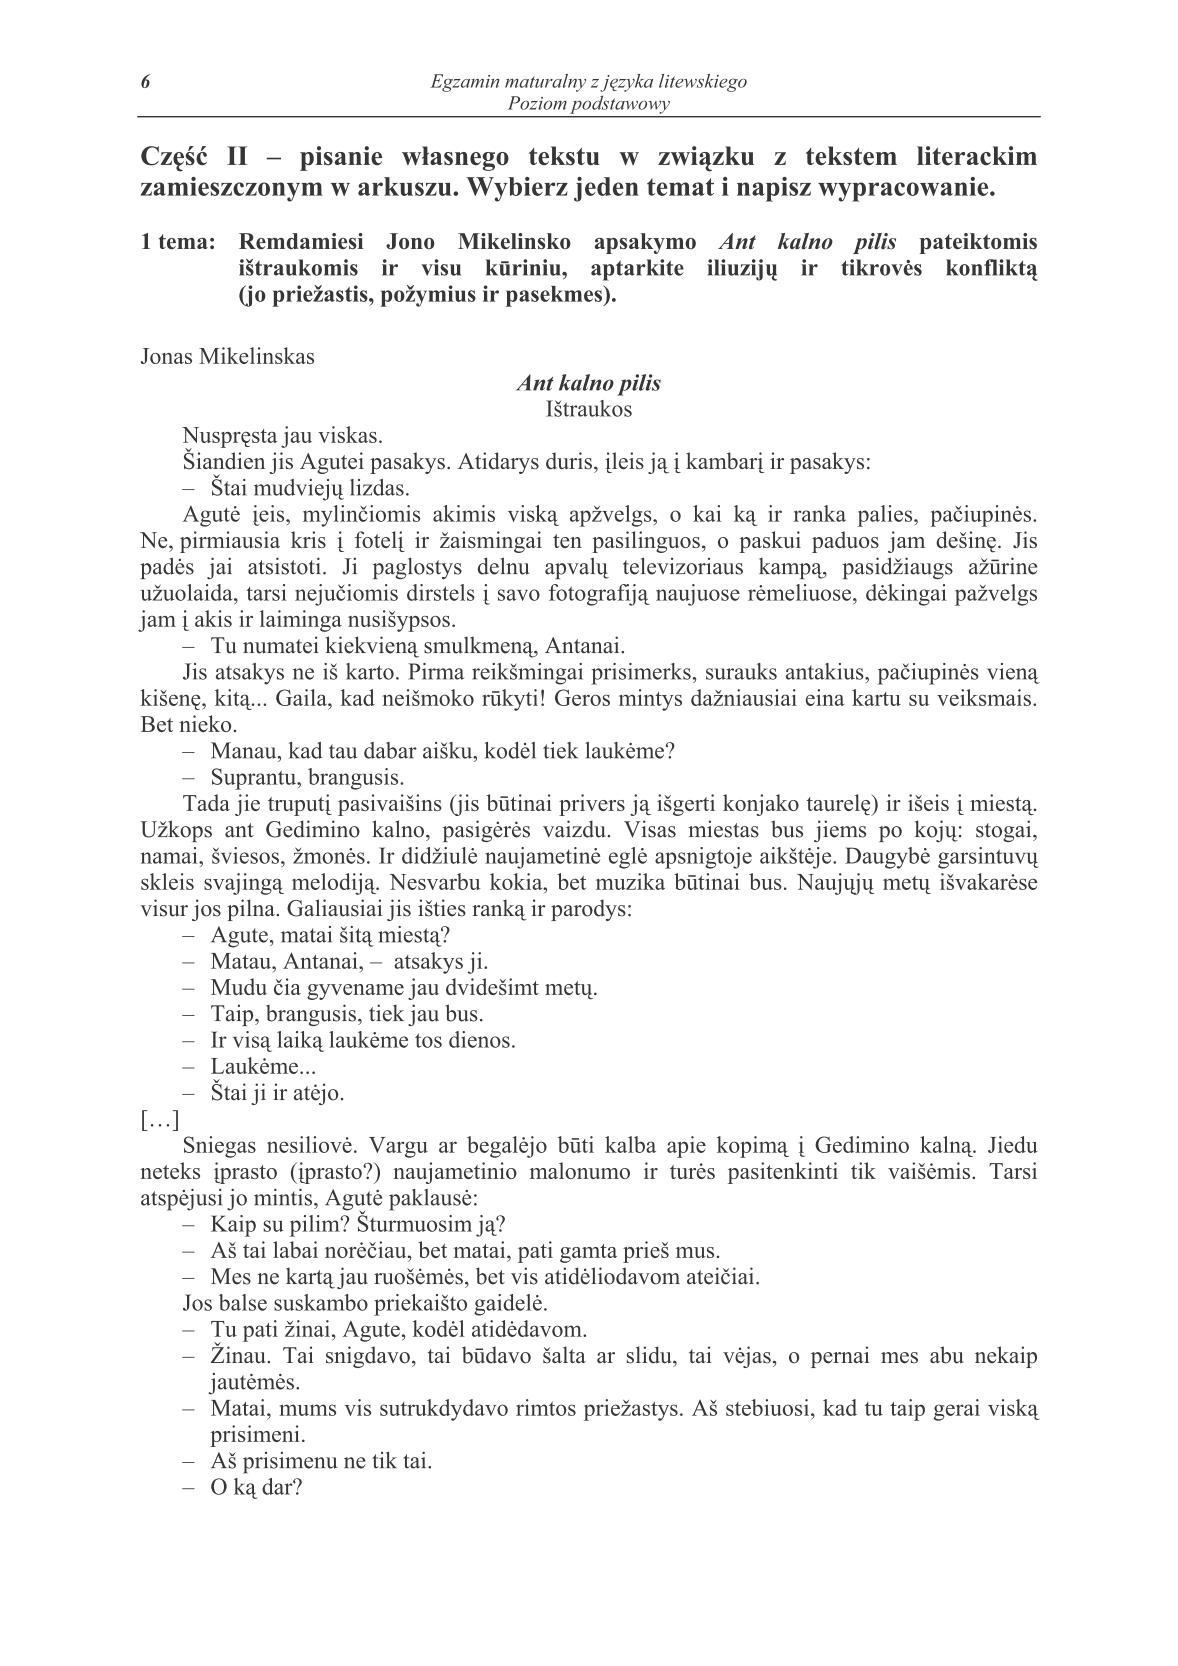 pytania-jezyk-litewski-poziom-podstawowy-matura-2014-str.6